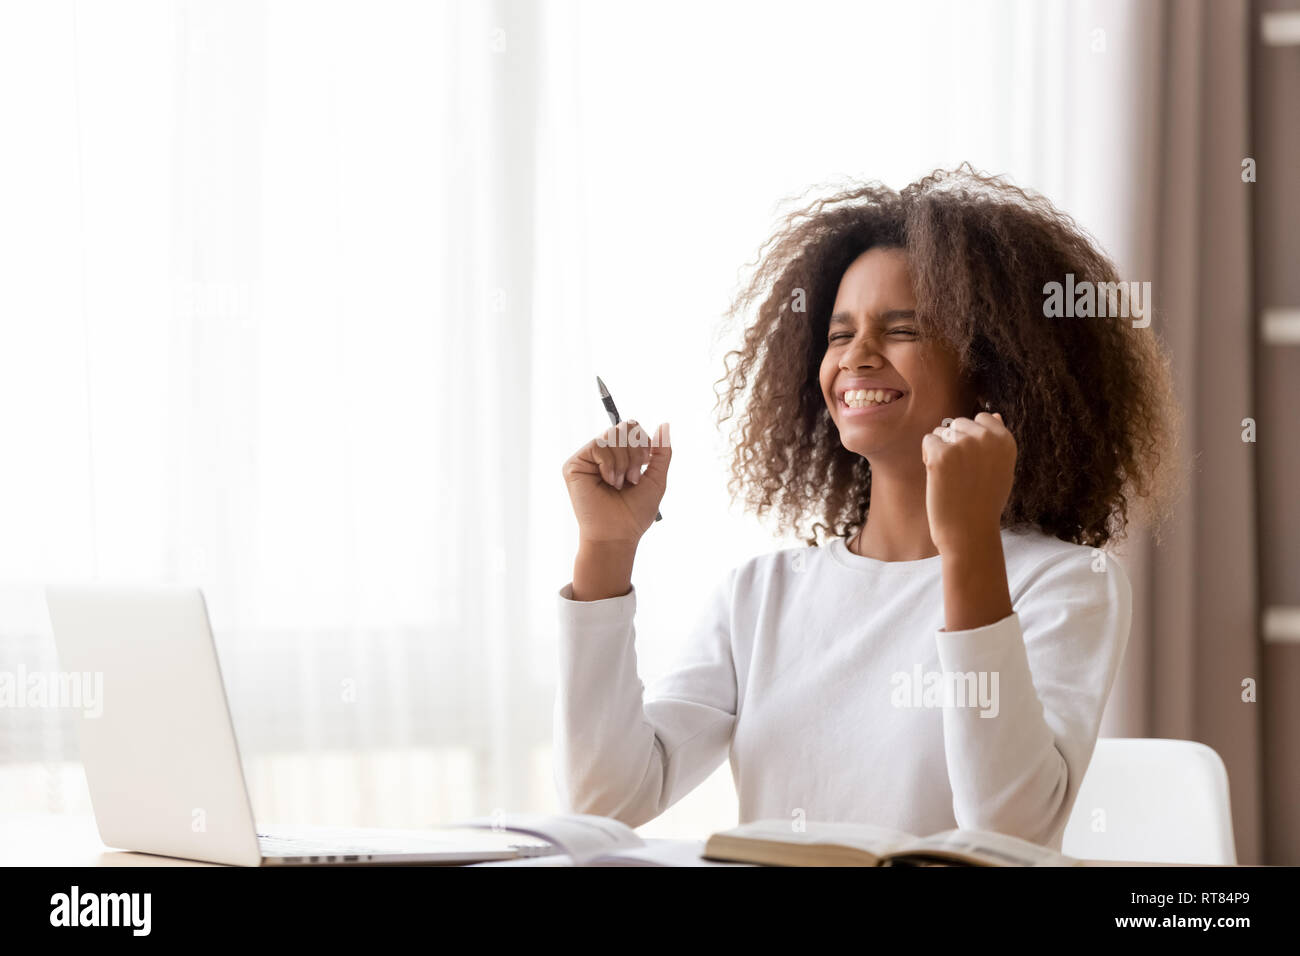 Afrikanische Schülerin am Schreibtisch sitzen fühlt sich glücklich erhalten grosse Nachrichten Stockfoto